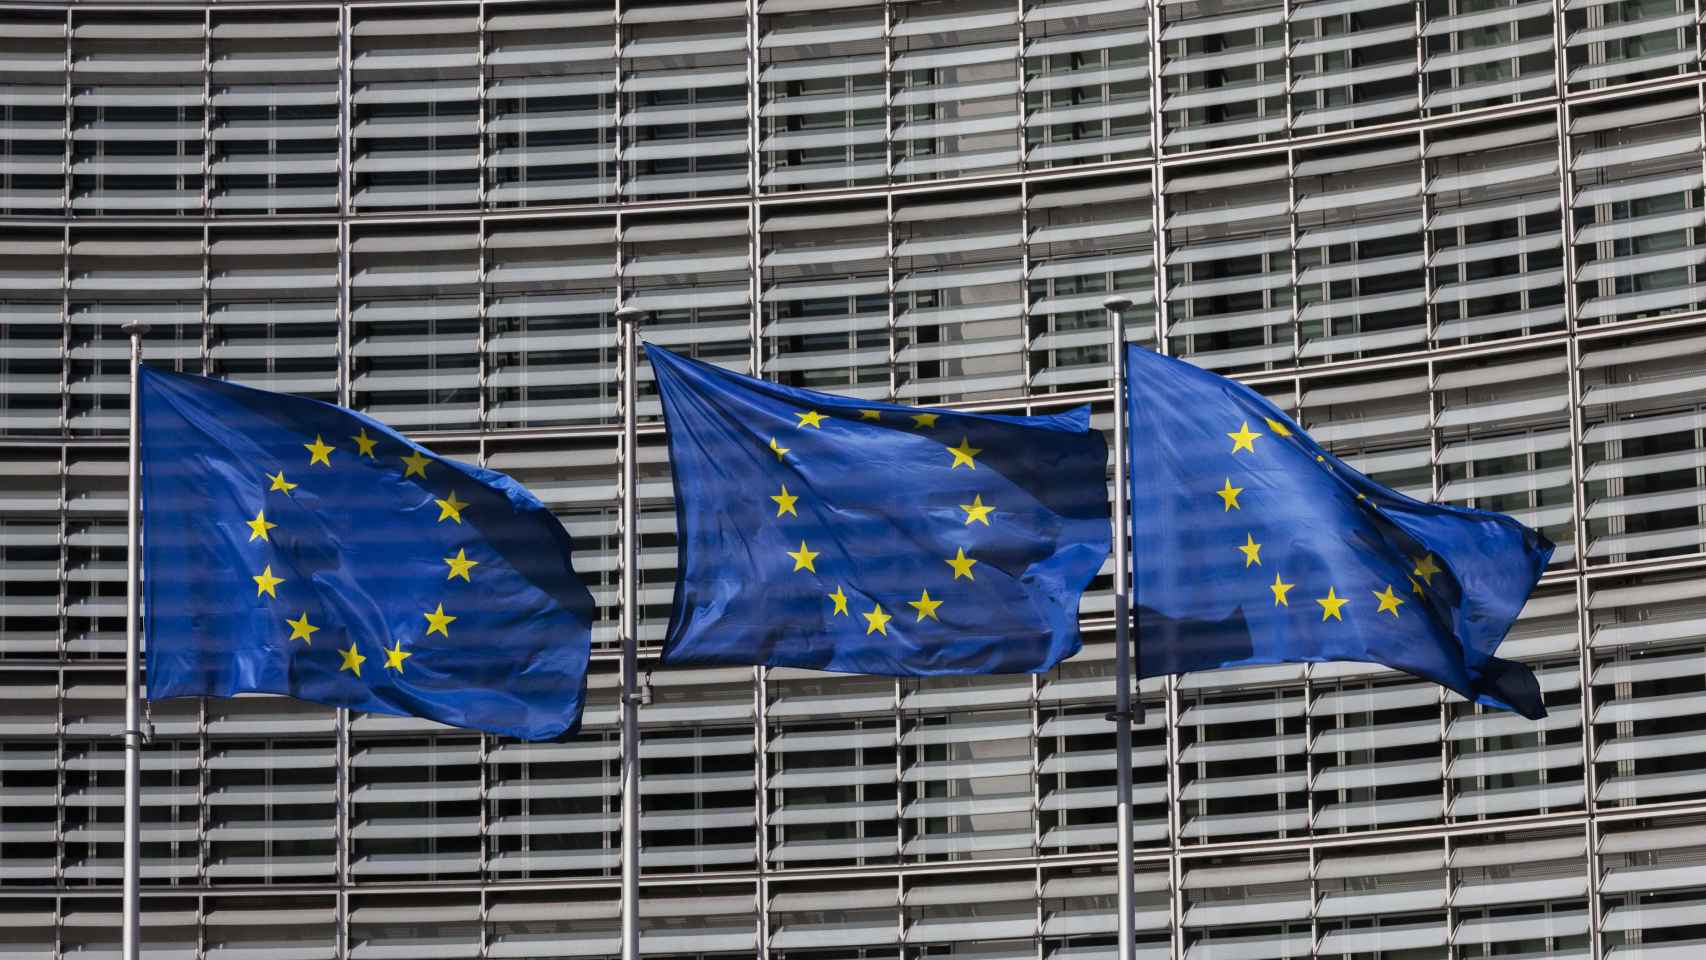 Banderas europeas / EP